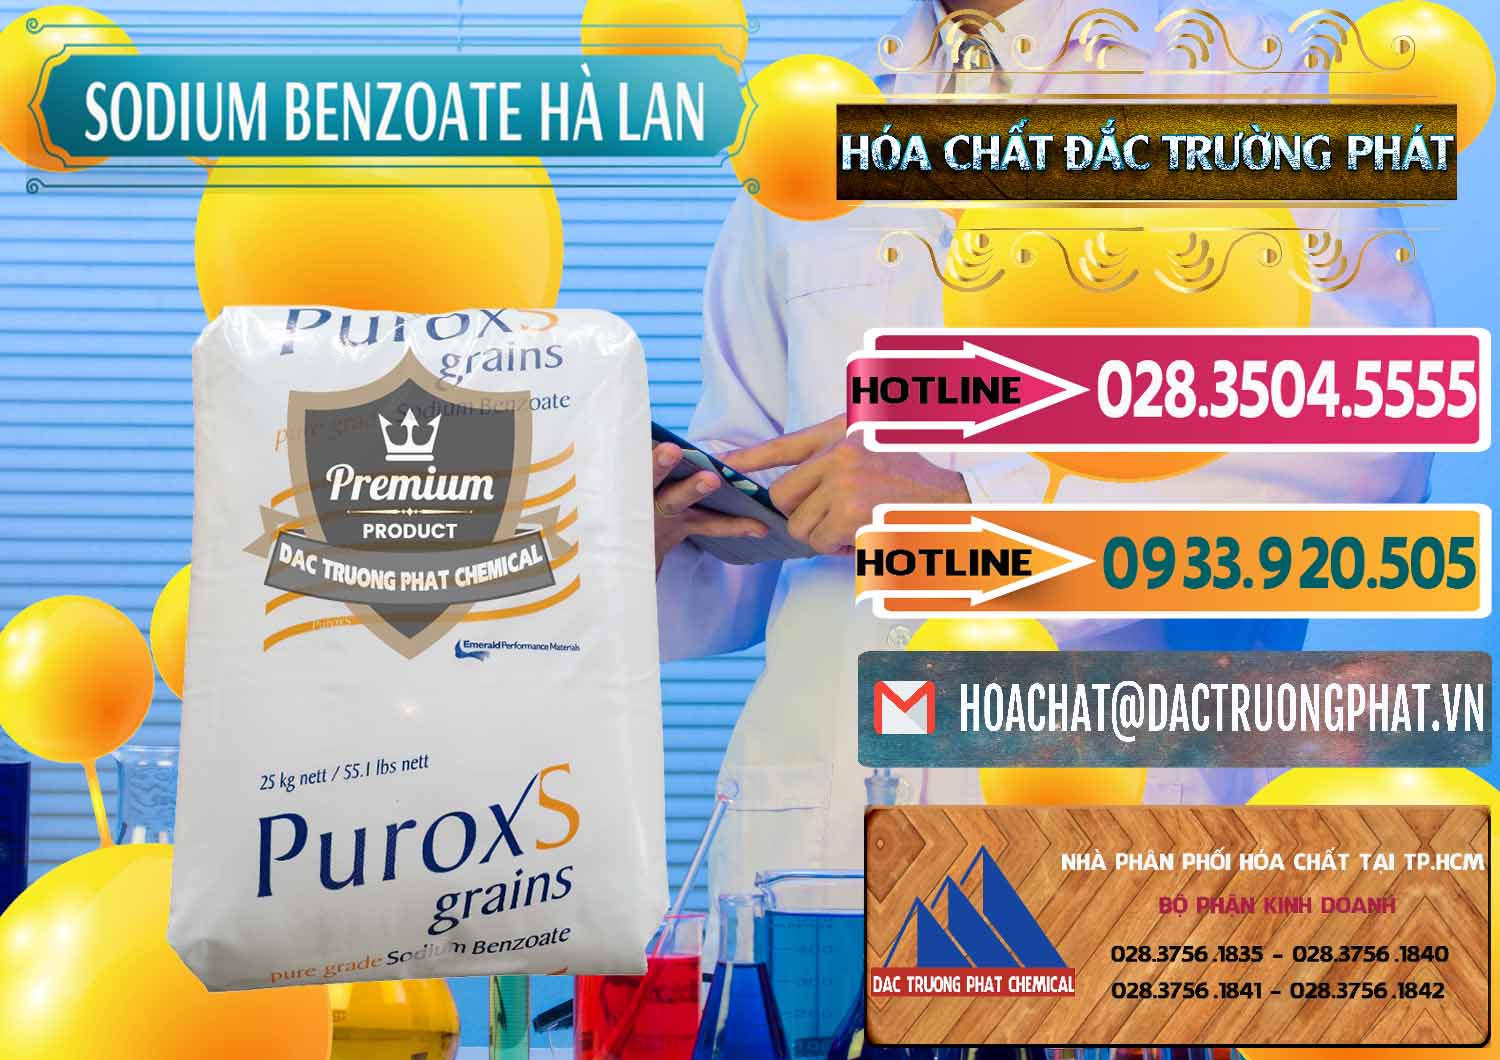 Cty chuyên cung cấp & bán Sodium Benzoate - Mốc Bột Puroxs Hà Lan Netherlands - 0467 - Nhà cung cấp _ nhập khẩu hóa chất tại TP.HCM - dactruongphat.vn